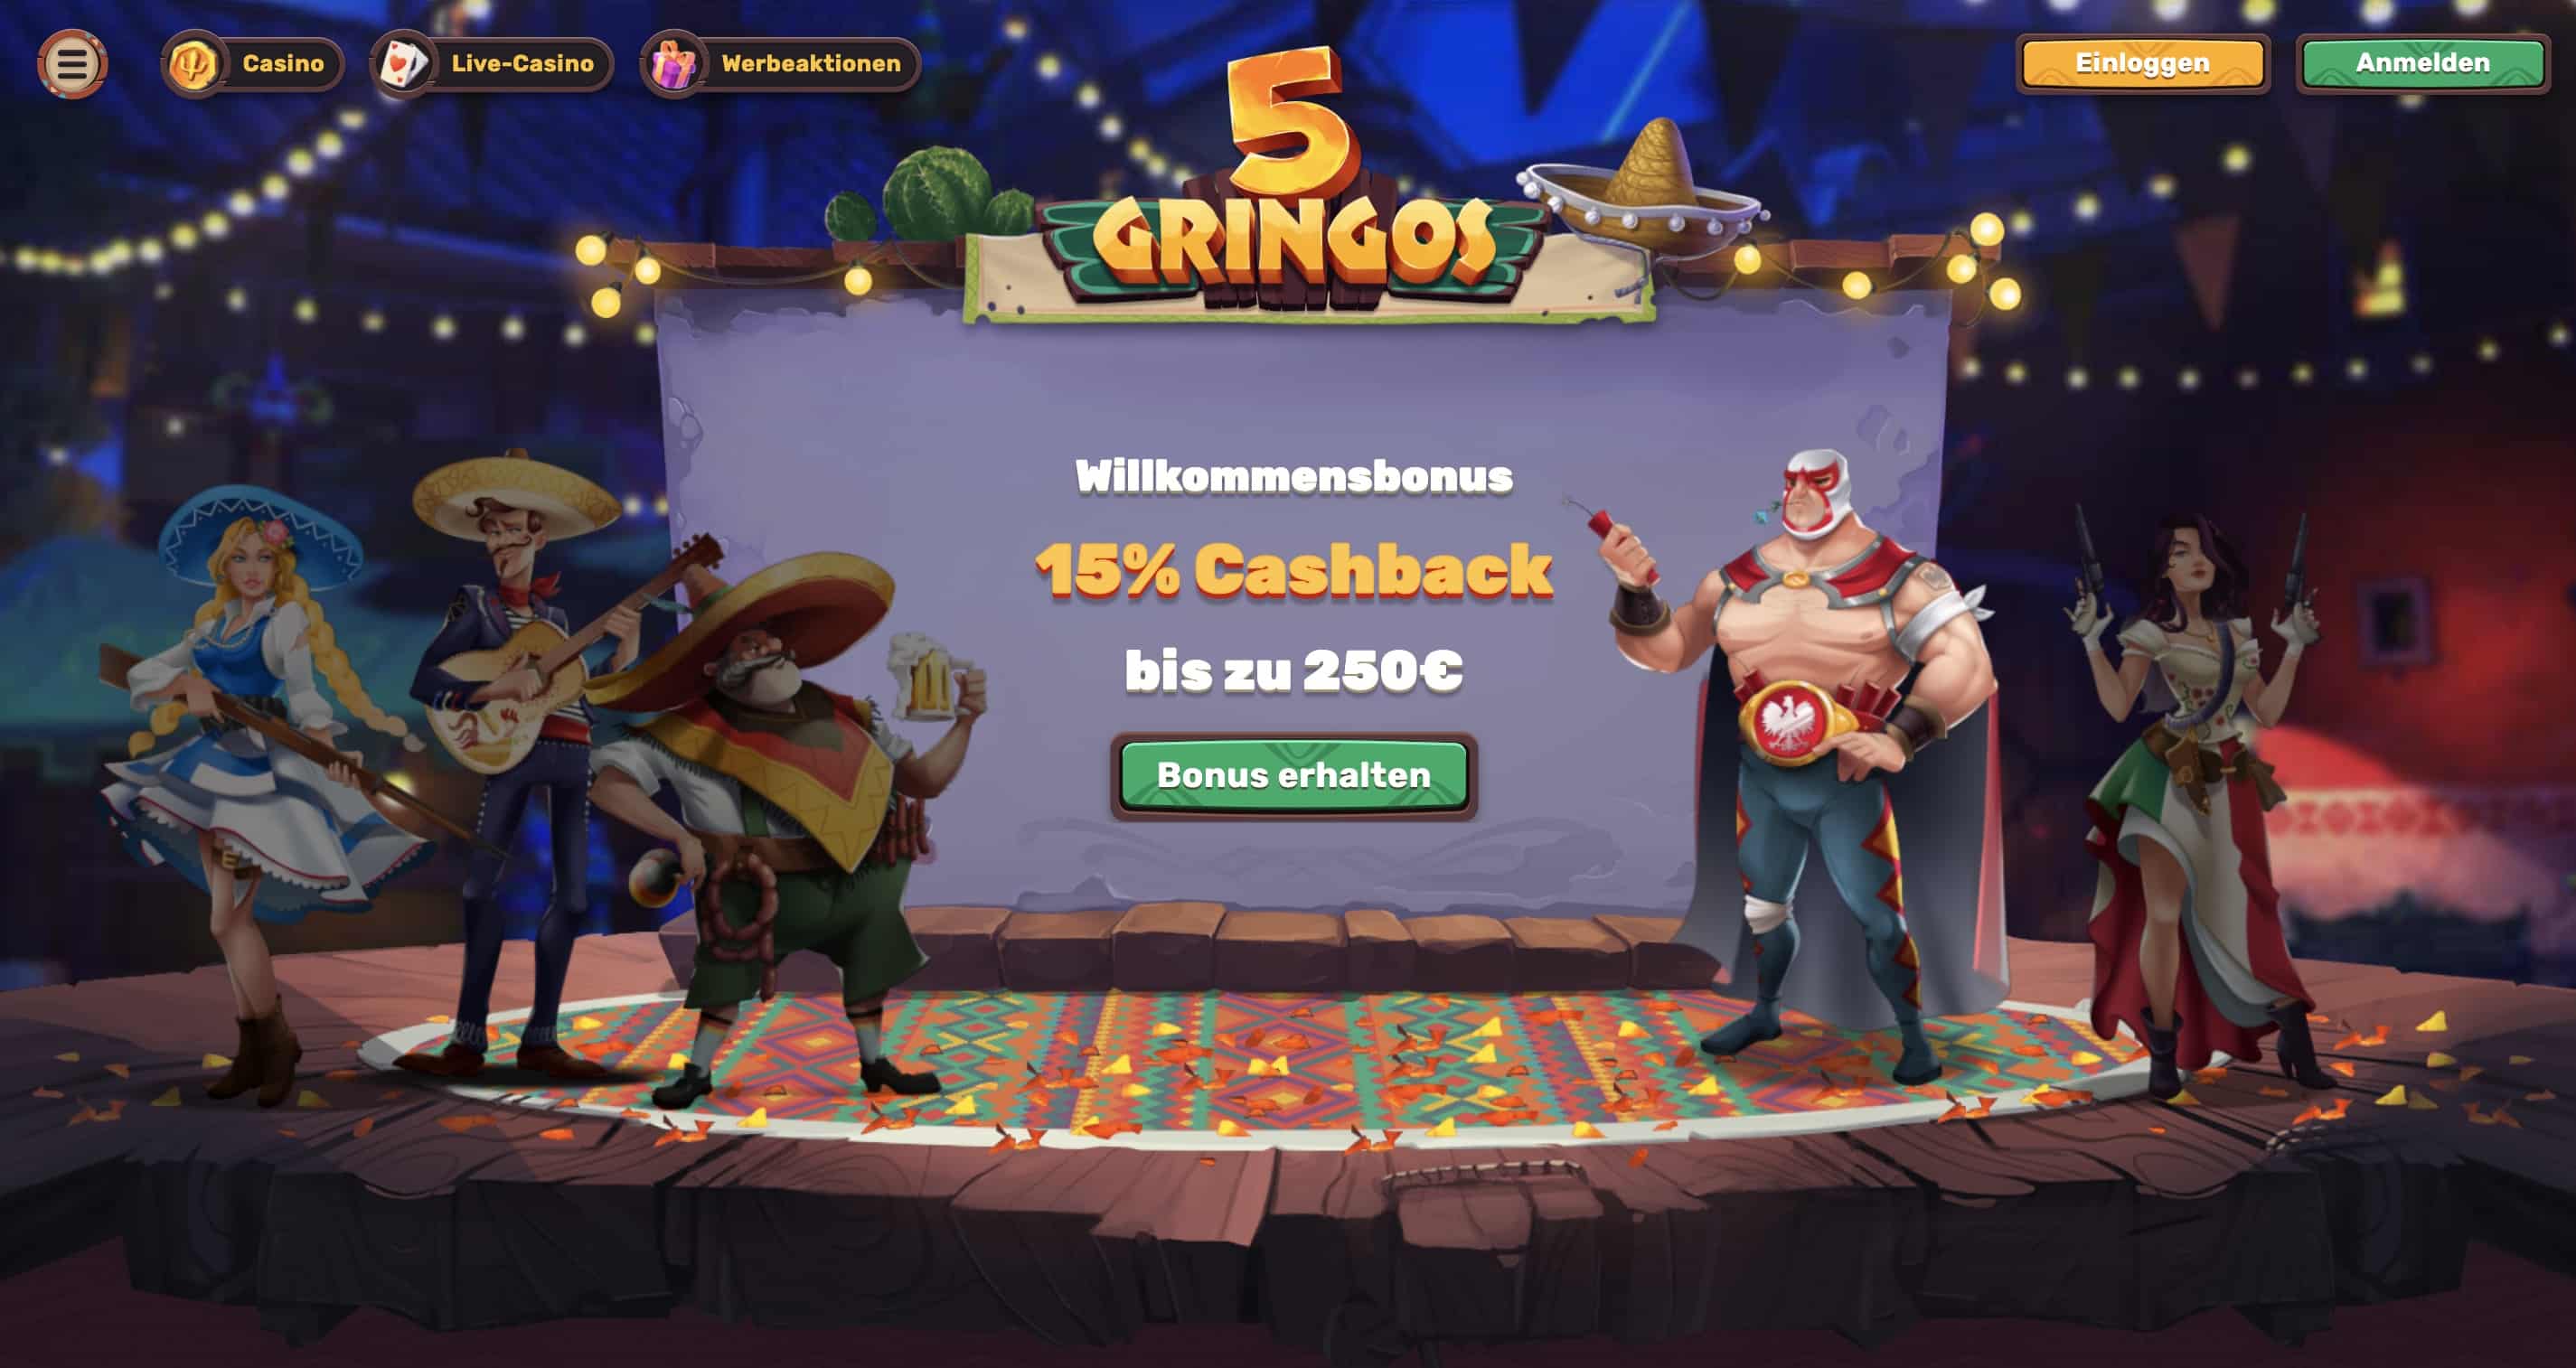 5gringos casino log in